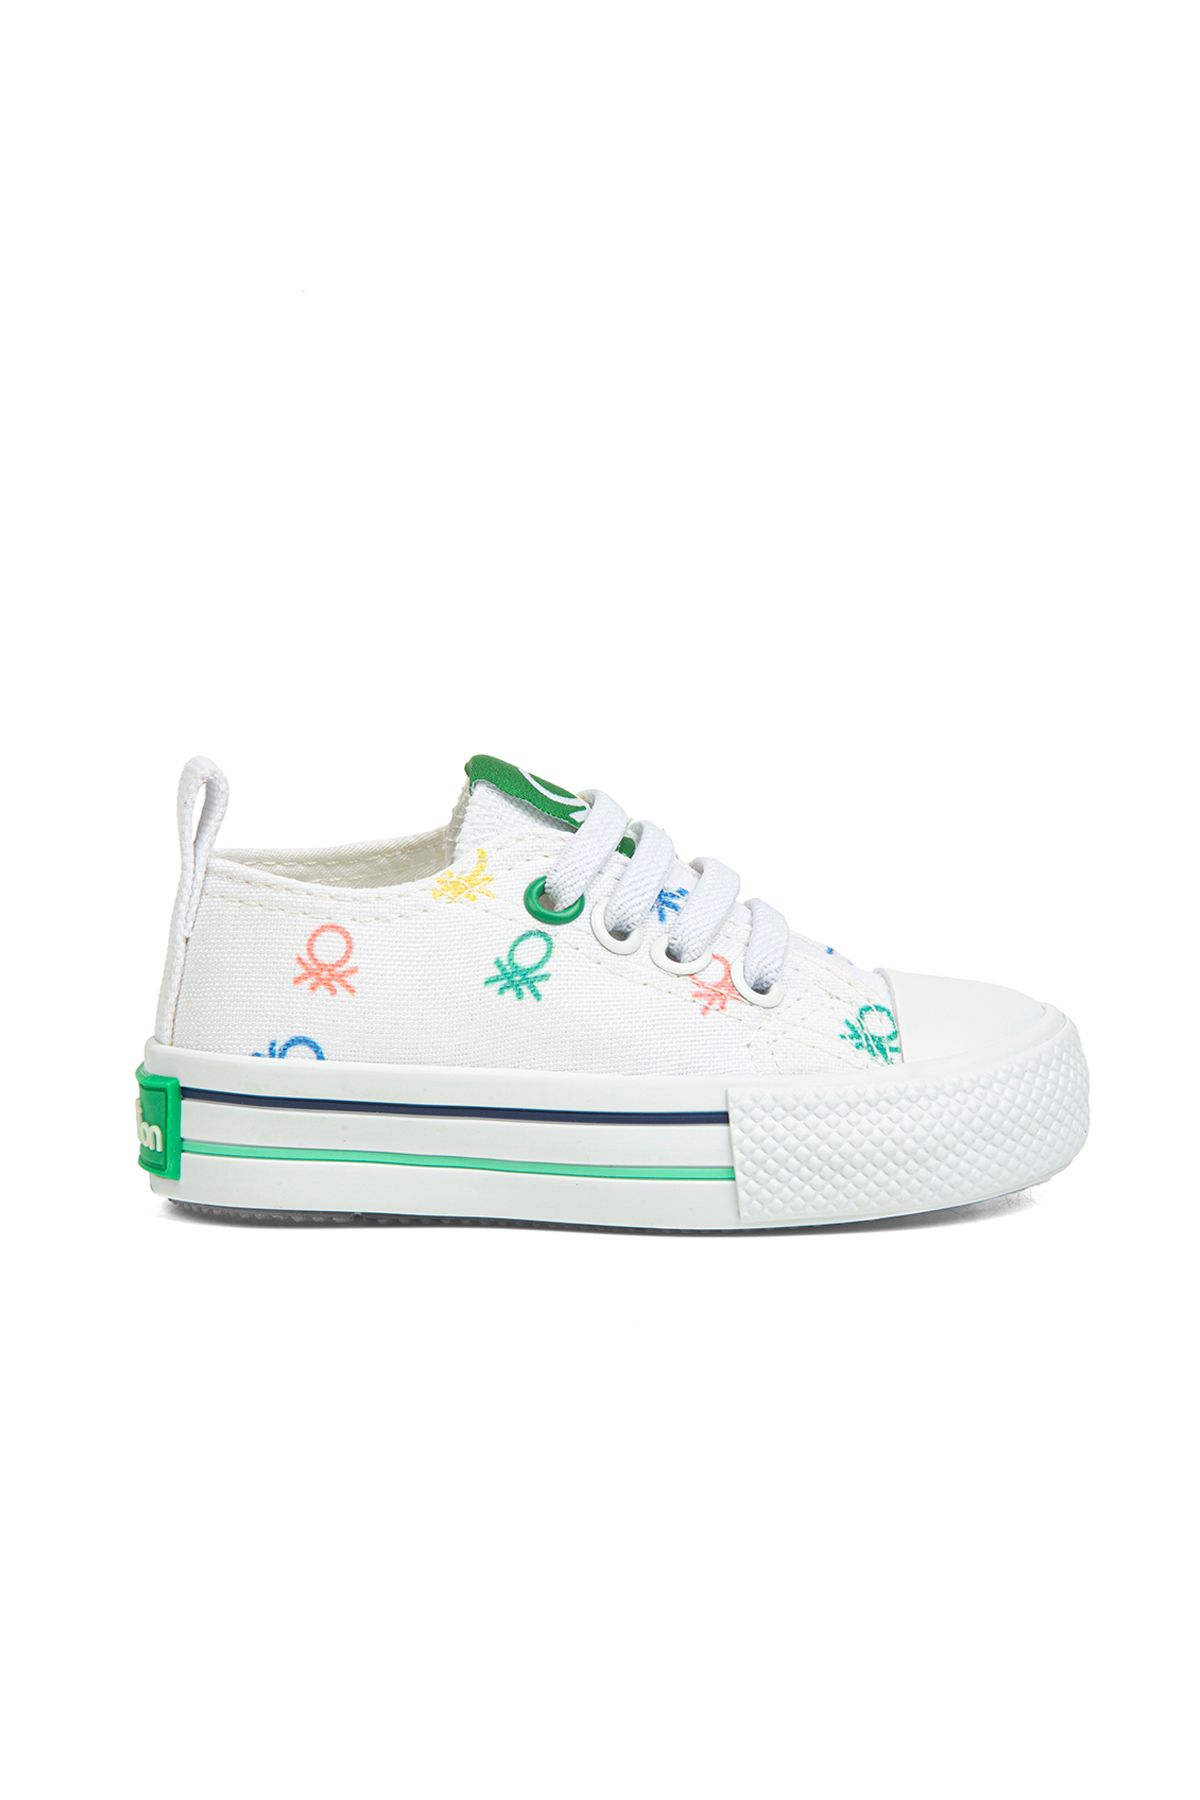 Benetton Kız Çocuk Spor Ayakkabı 21-25 Numara Beyaz